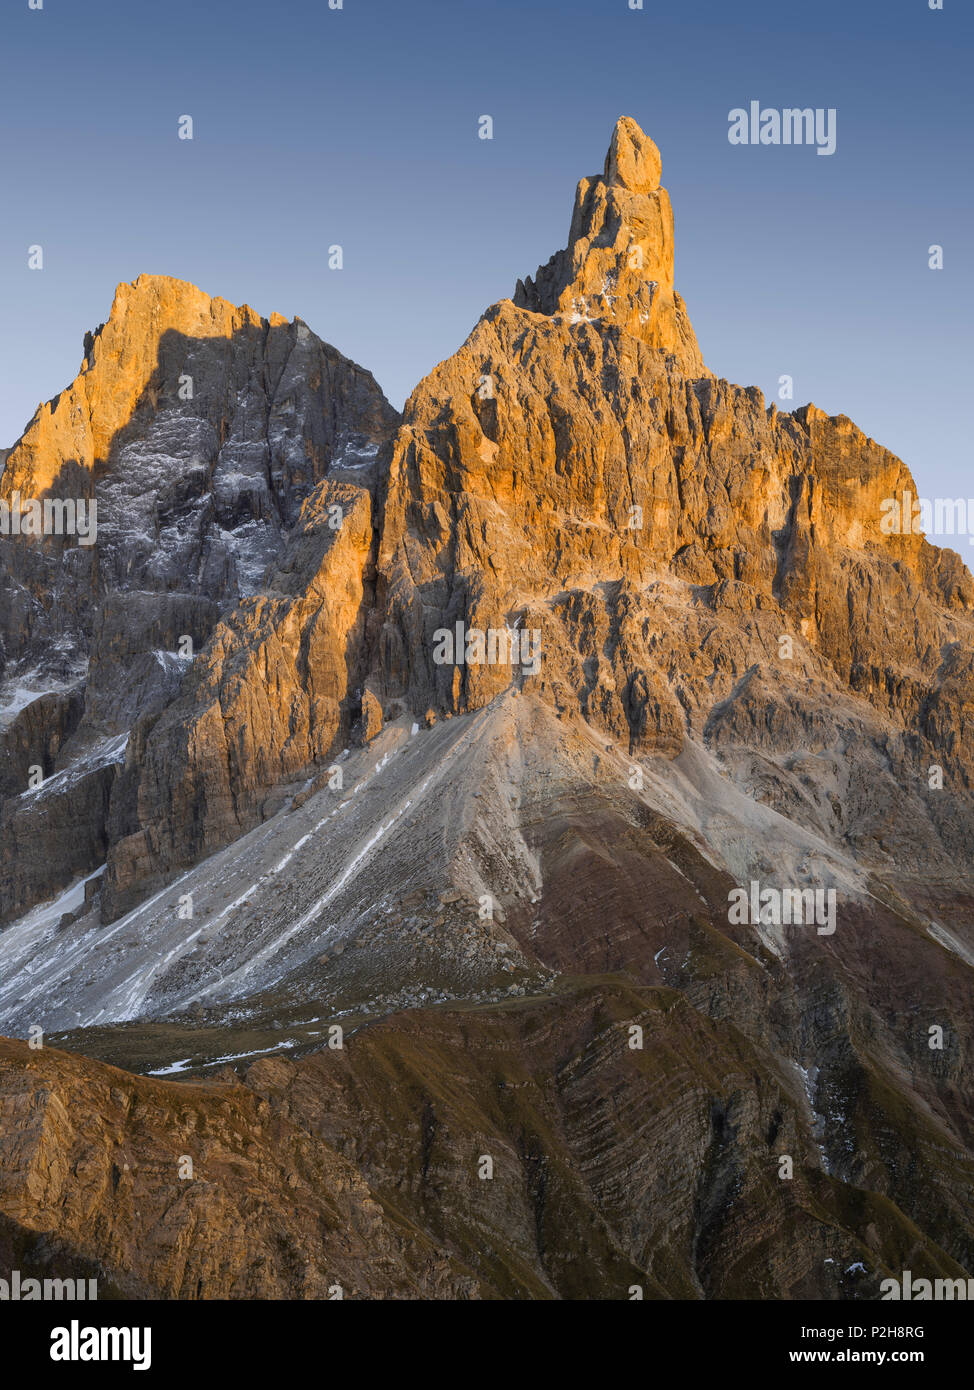 Cima della Vezzana, 3192M, 3184m de Cimon della Pala, Passo Rolle, Trentino, Alto Adige, Dolomitas, Italia Foto de stock